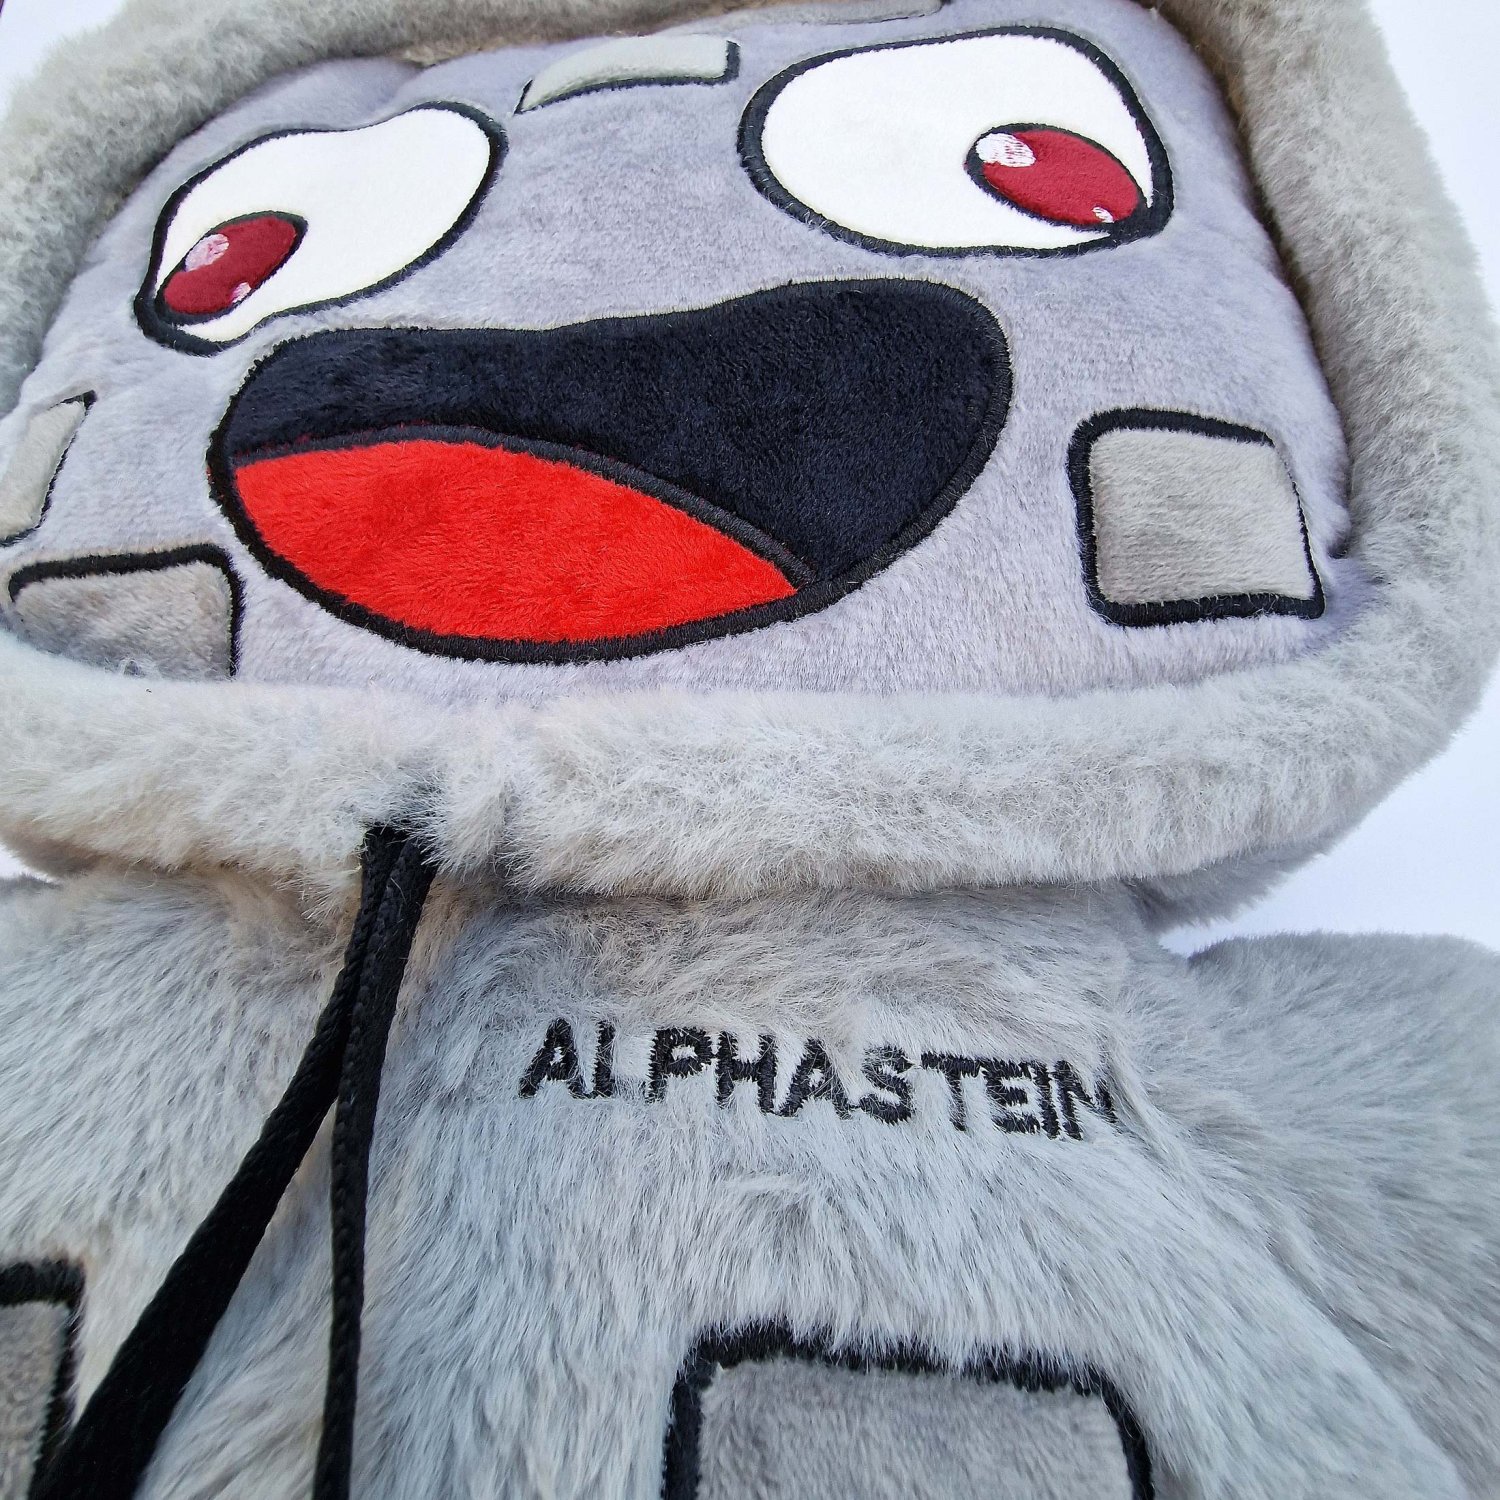 Alphastein Plush Figure